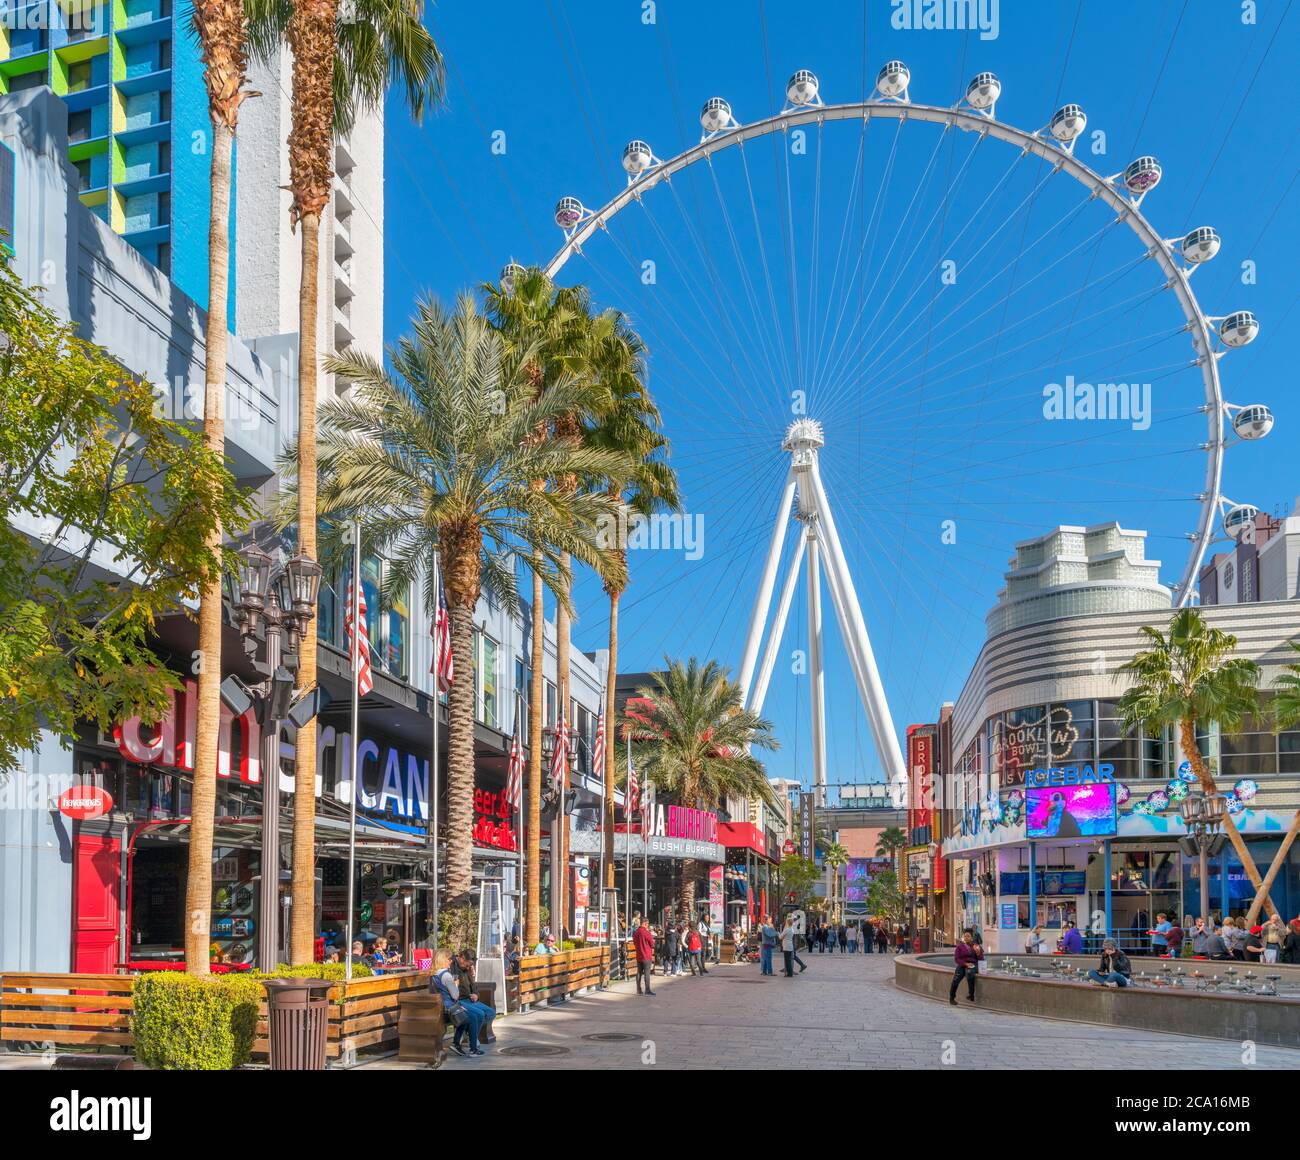 High Roller, Las Vegas. Geschäfte, Bars und Restaurants auf der Linq Promenade mit Blick auf das High Roller Riesenrad, Las Vegas, Nevada, USA Stockfoto